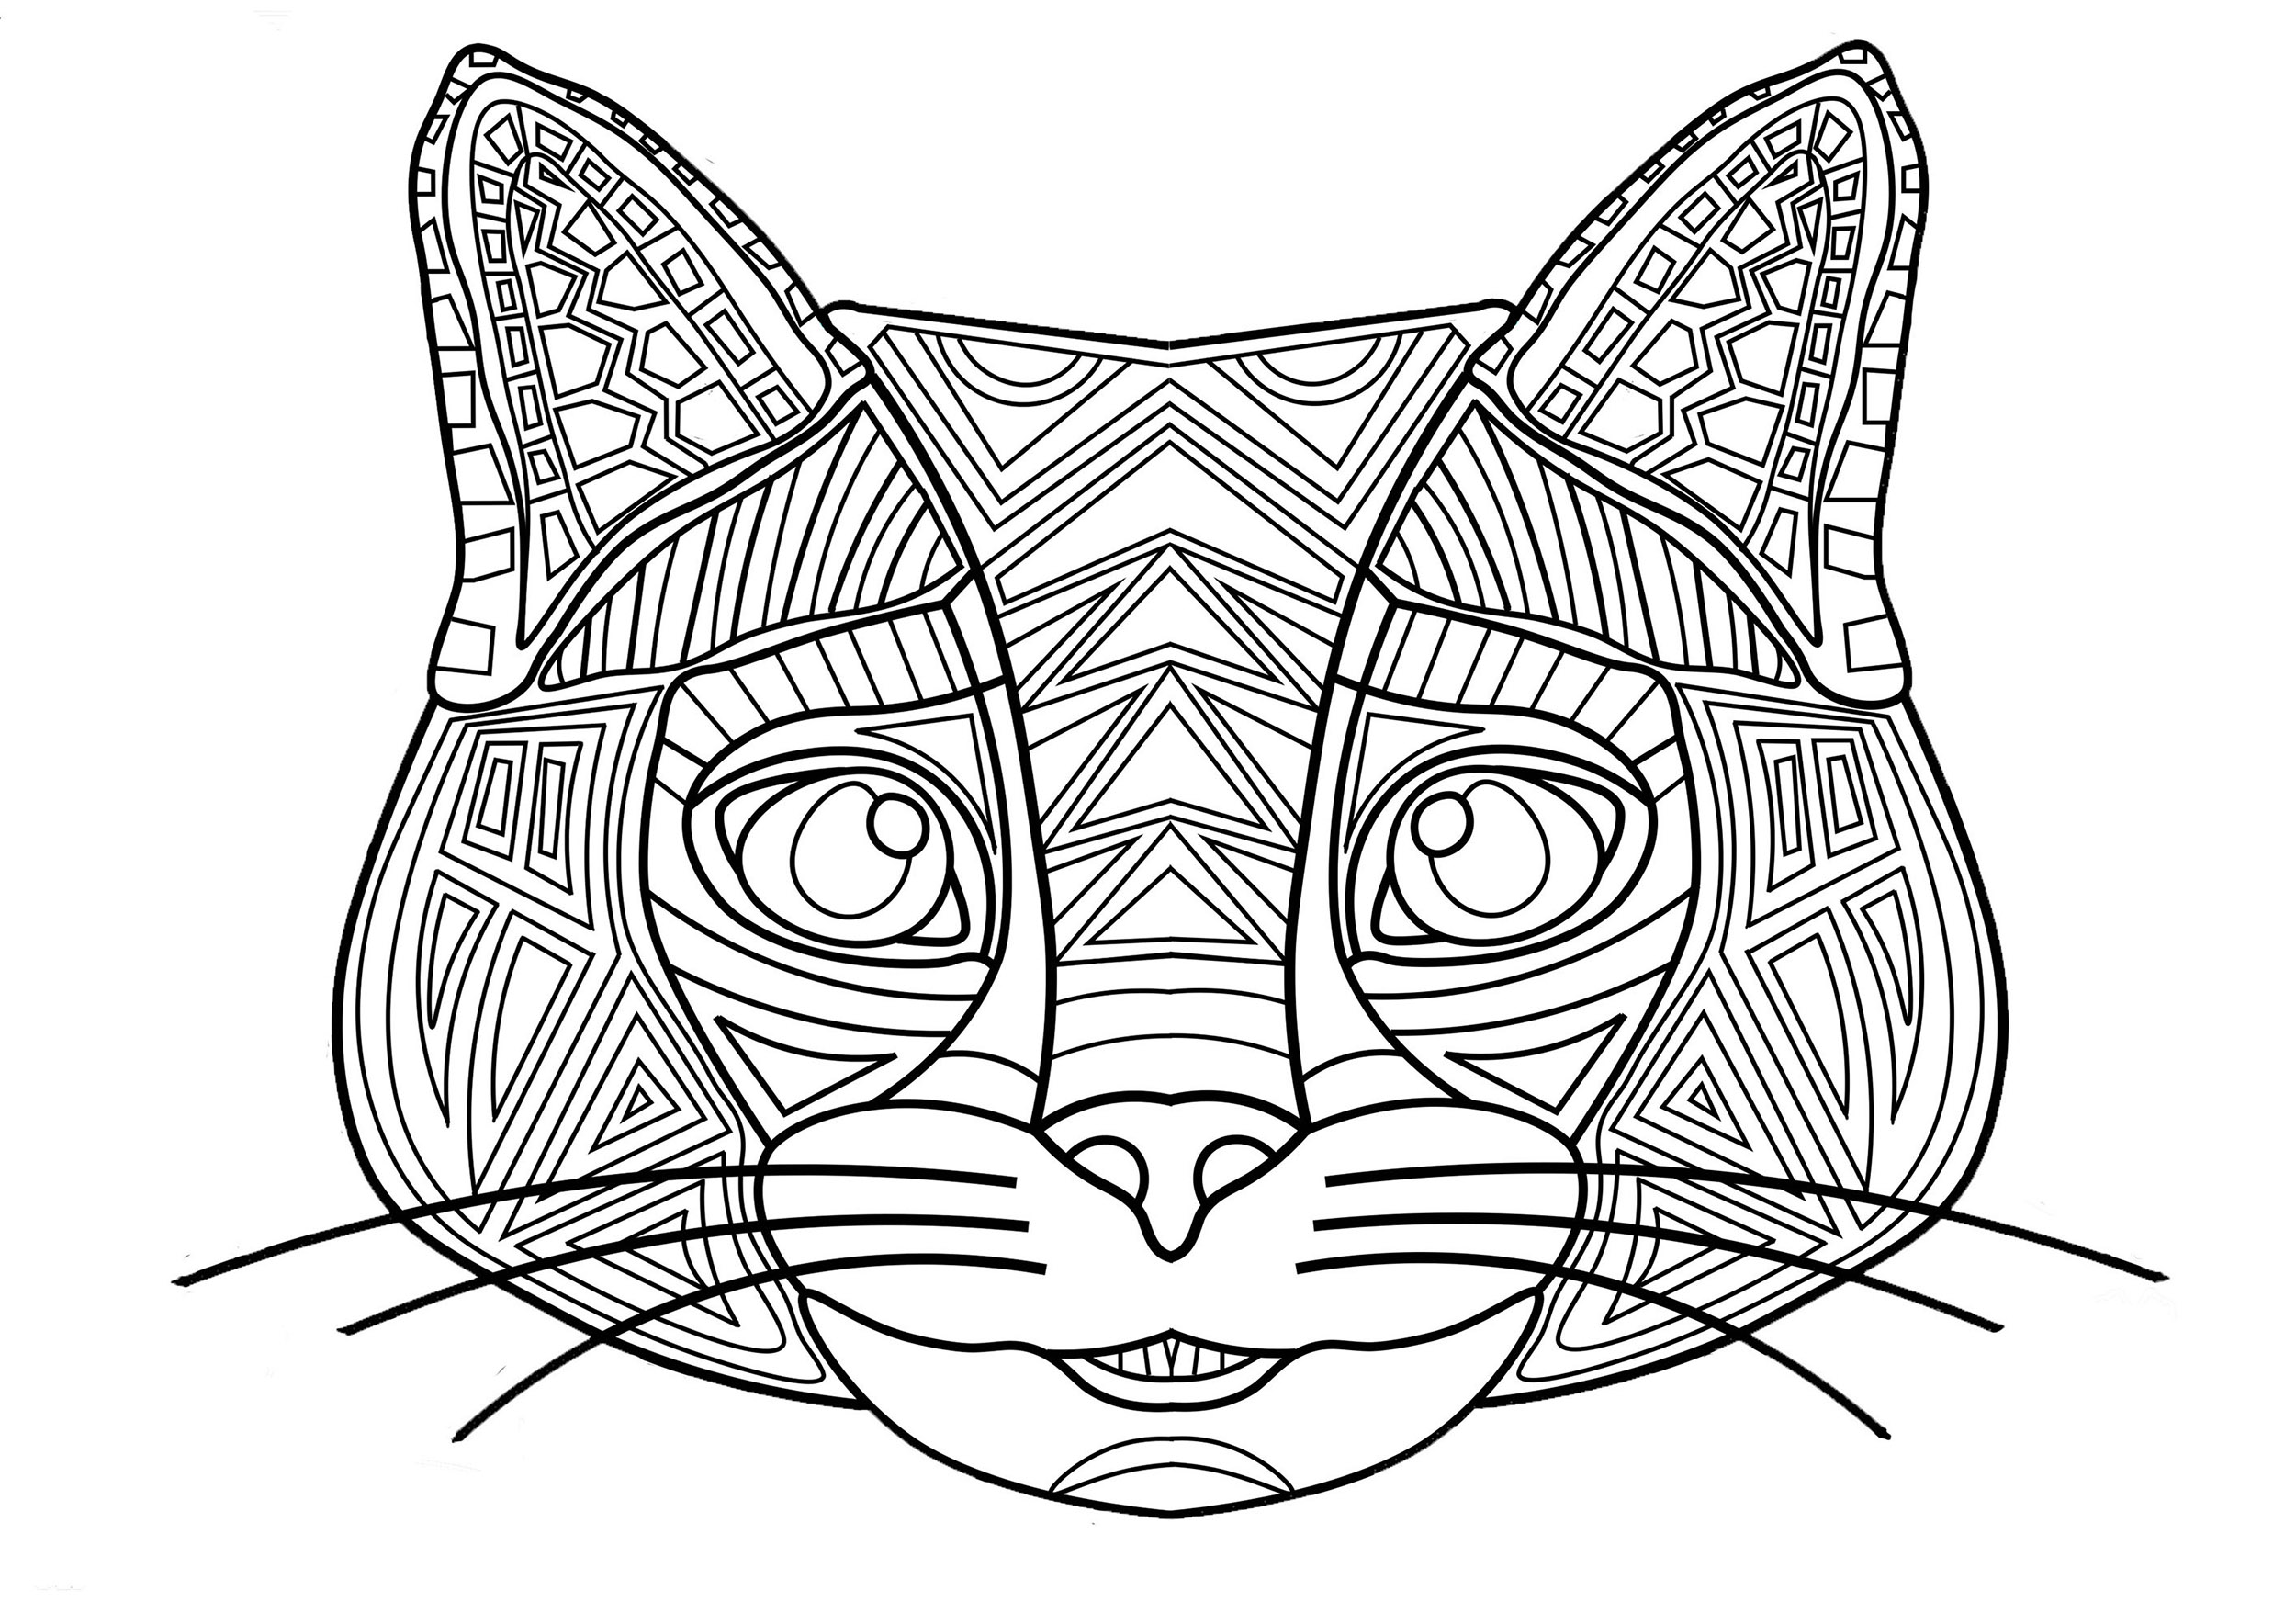 Colorir a cabeça do gato com desenhos simples